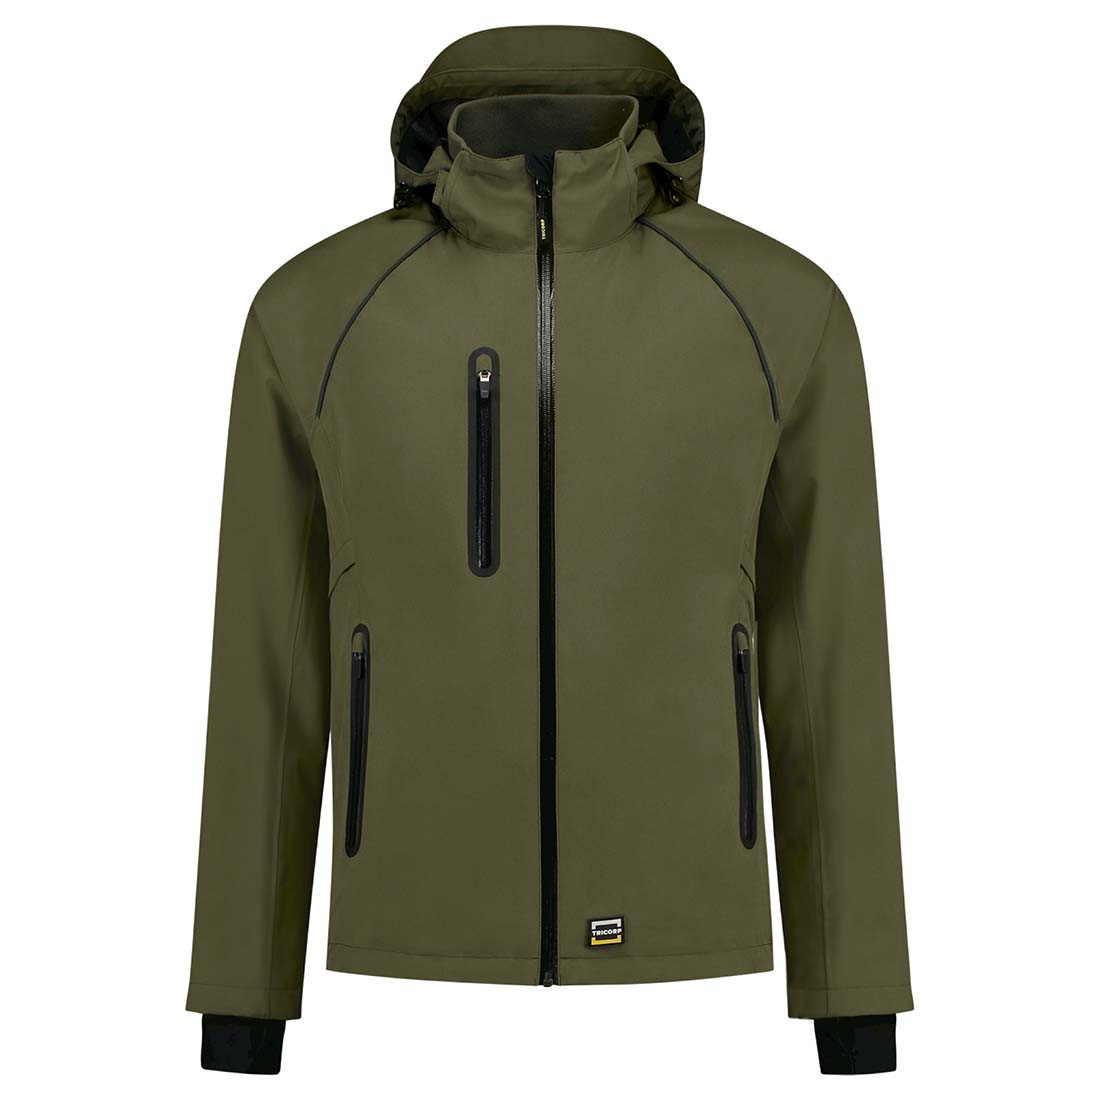 Unisex Rain Jacket - Safetywear